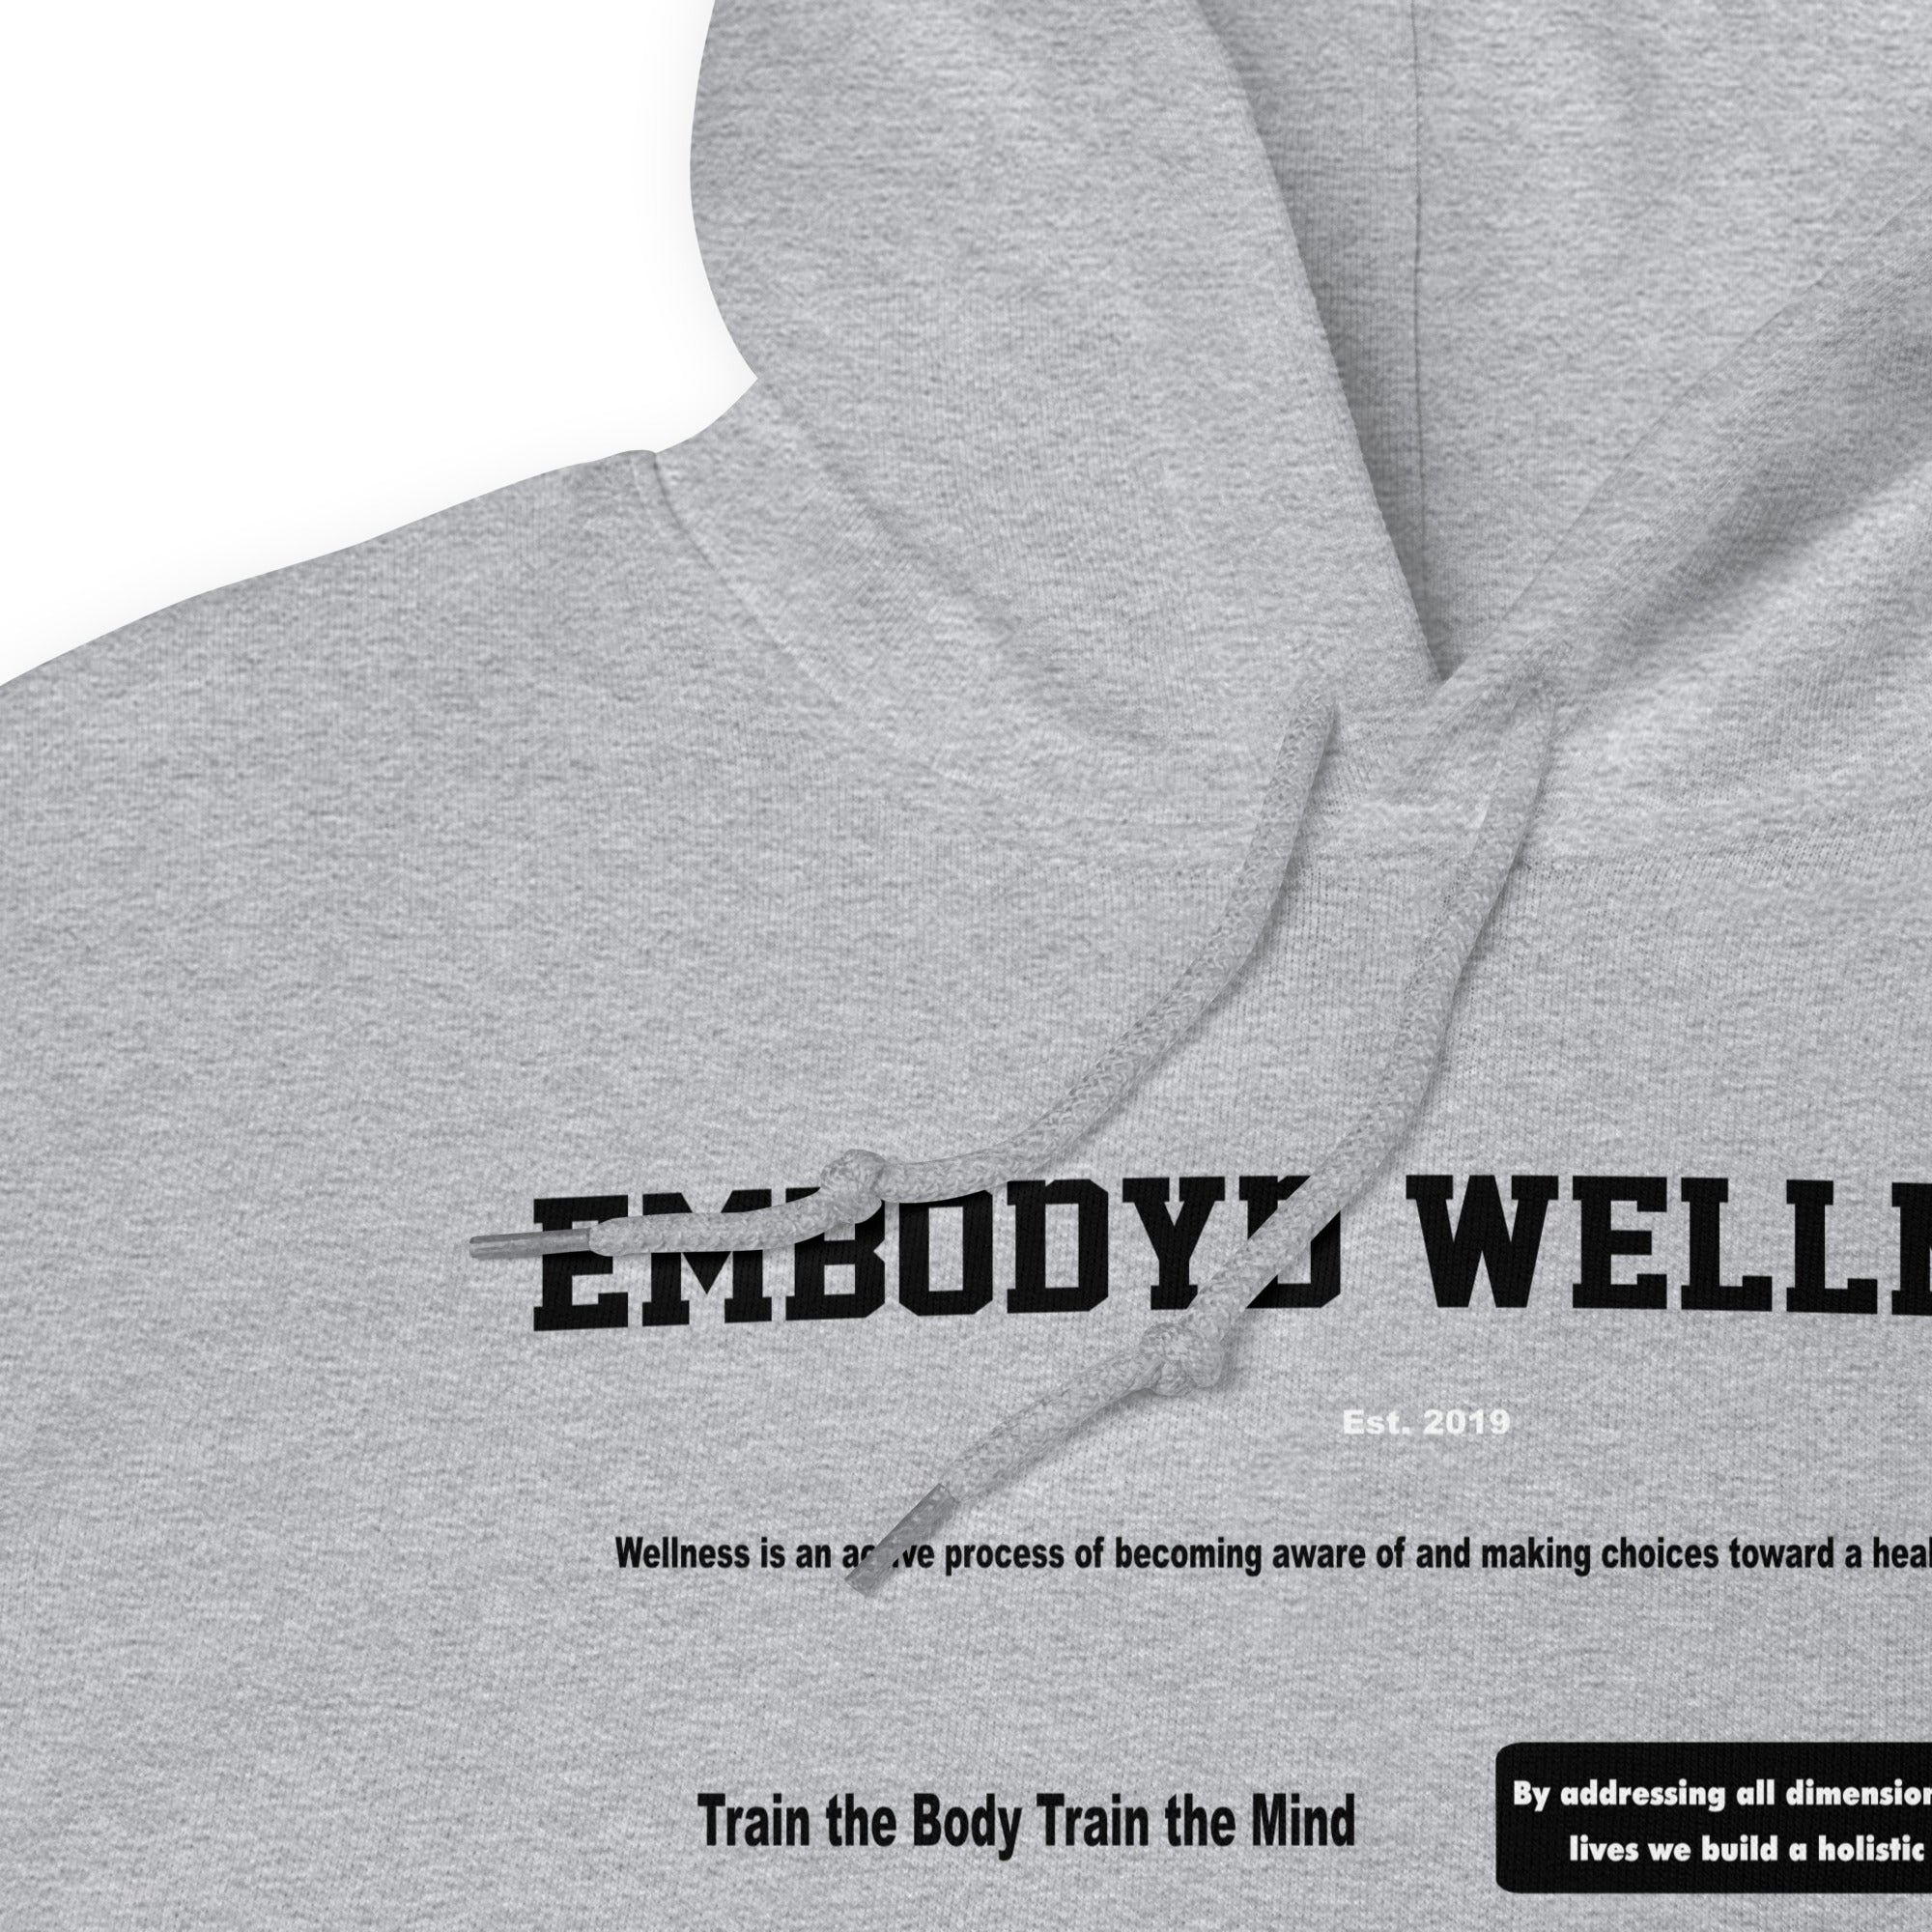 Embodyd Wellness Heavy Blend Hoodie Grey